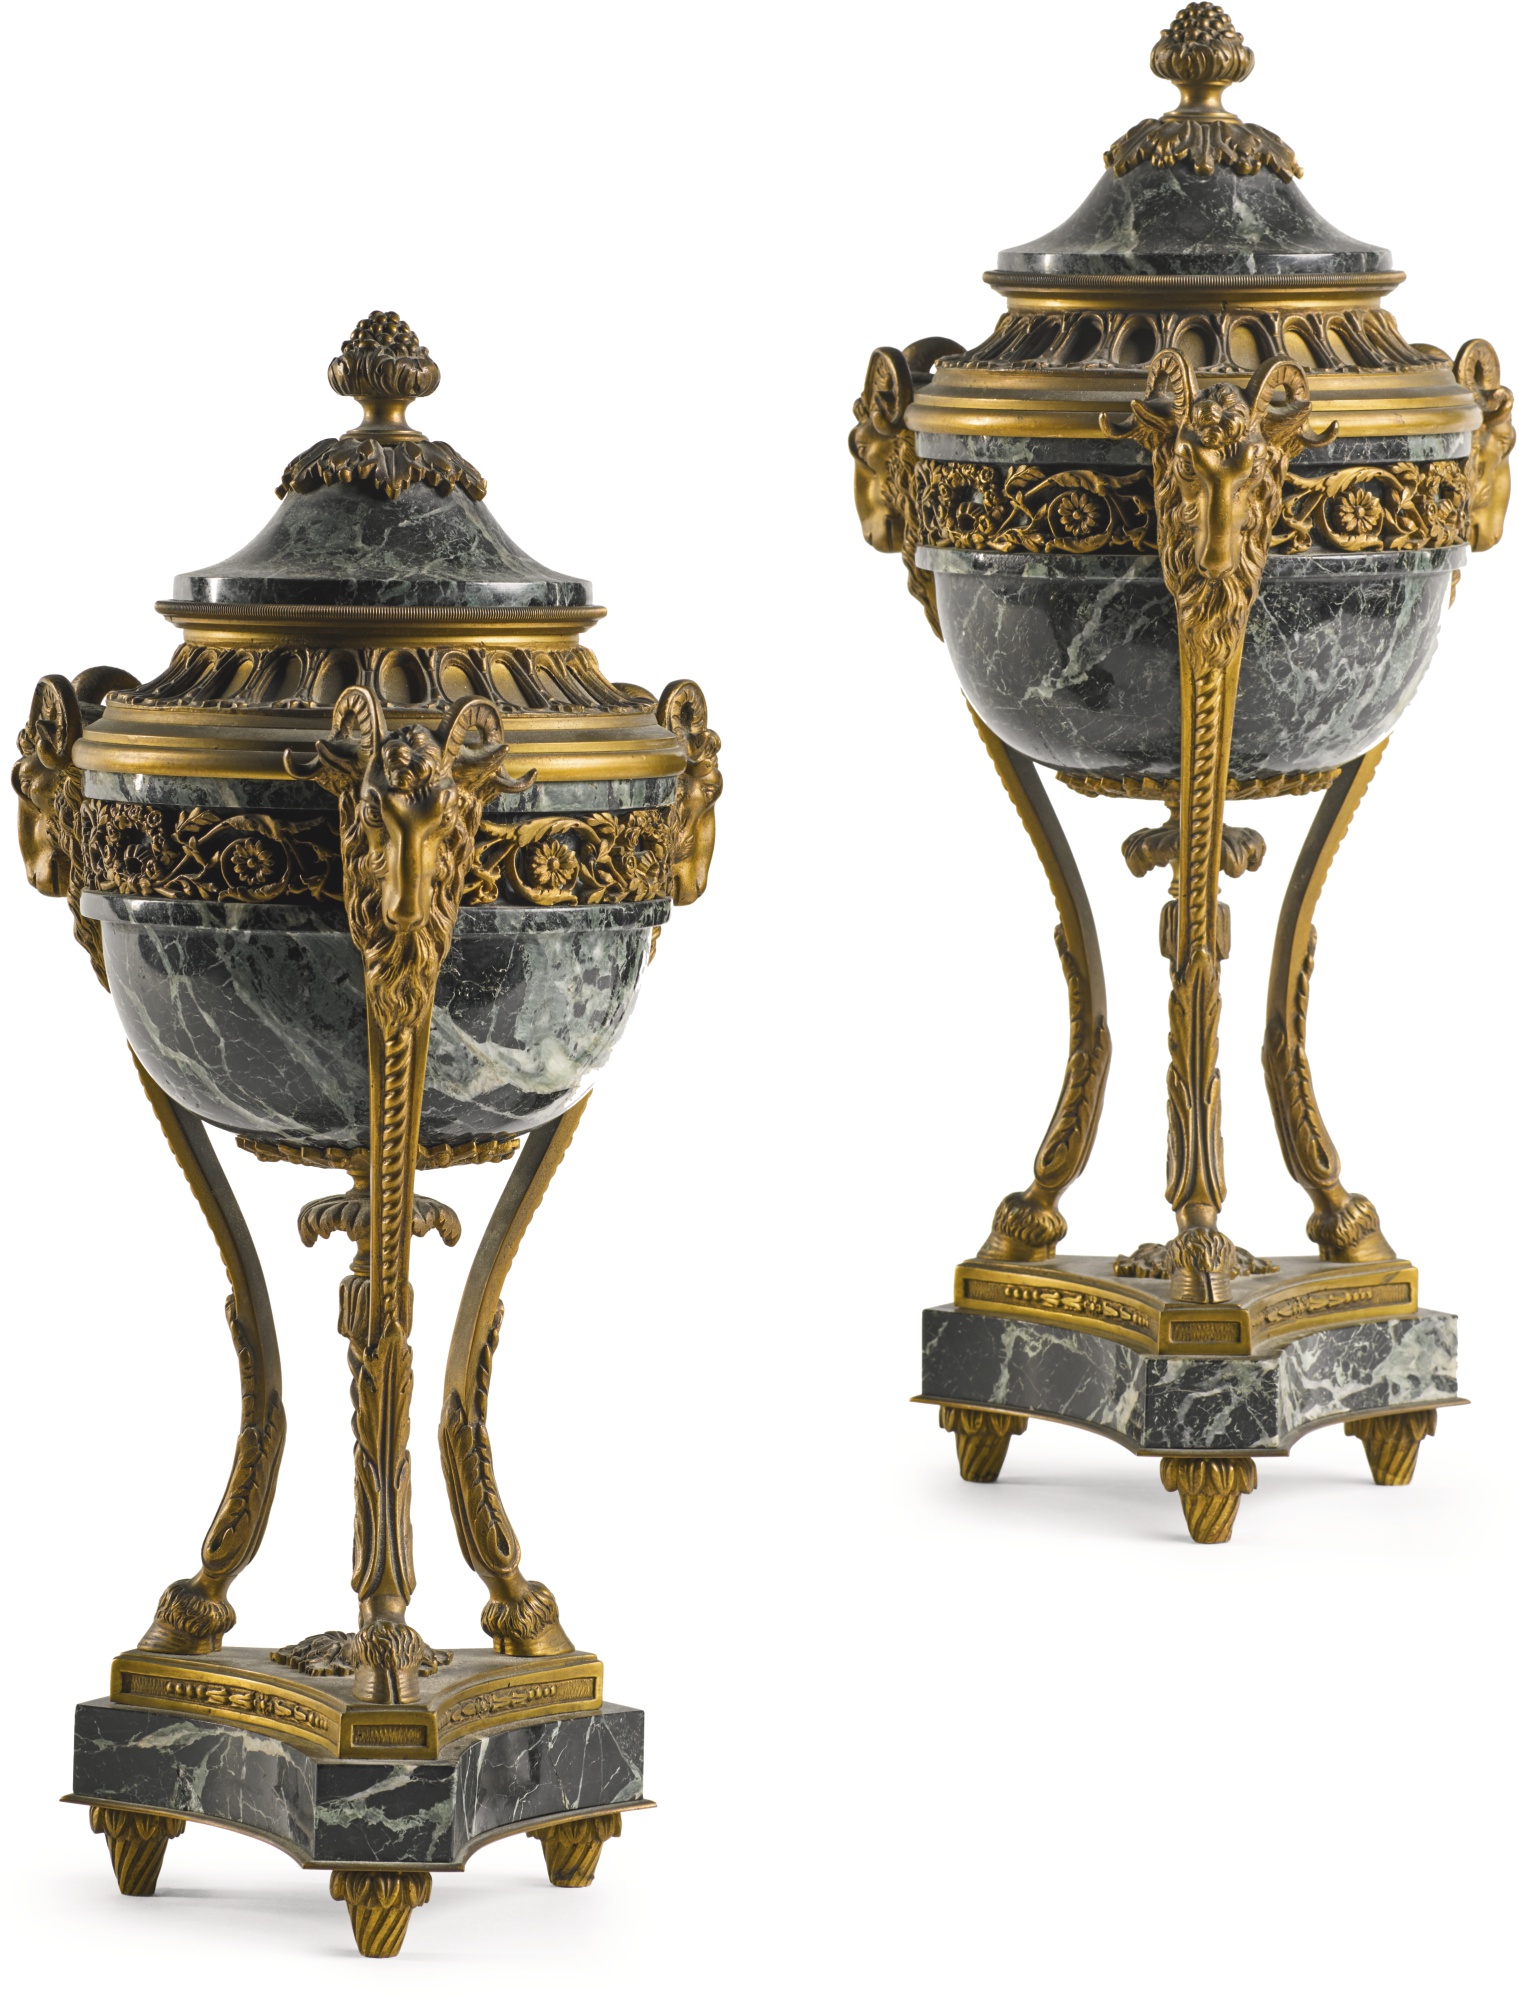 法国路易十六Louis XVI 莲花纹鎏金银香炉– [临渊阁]天地一家春